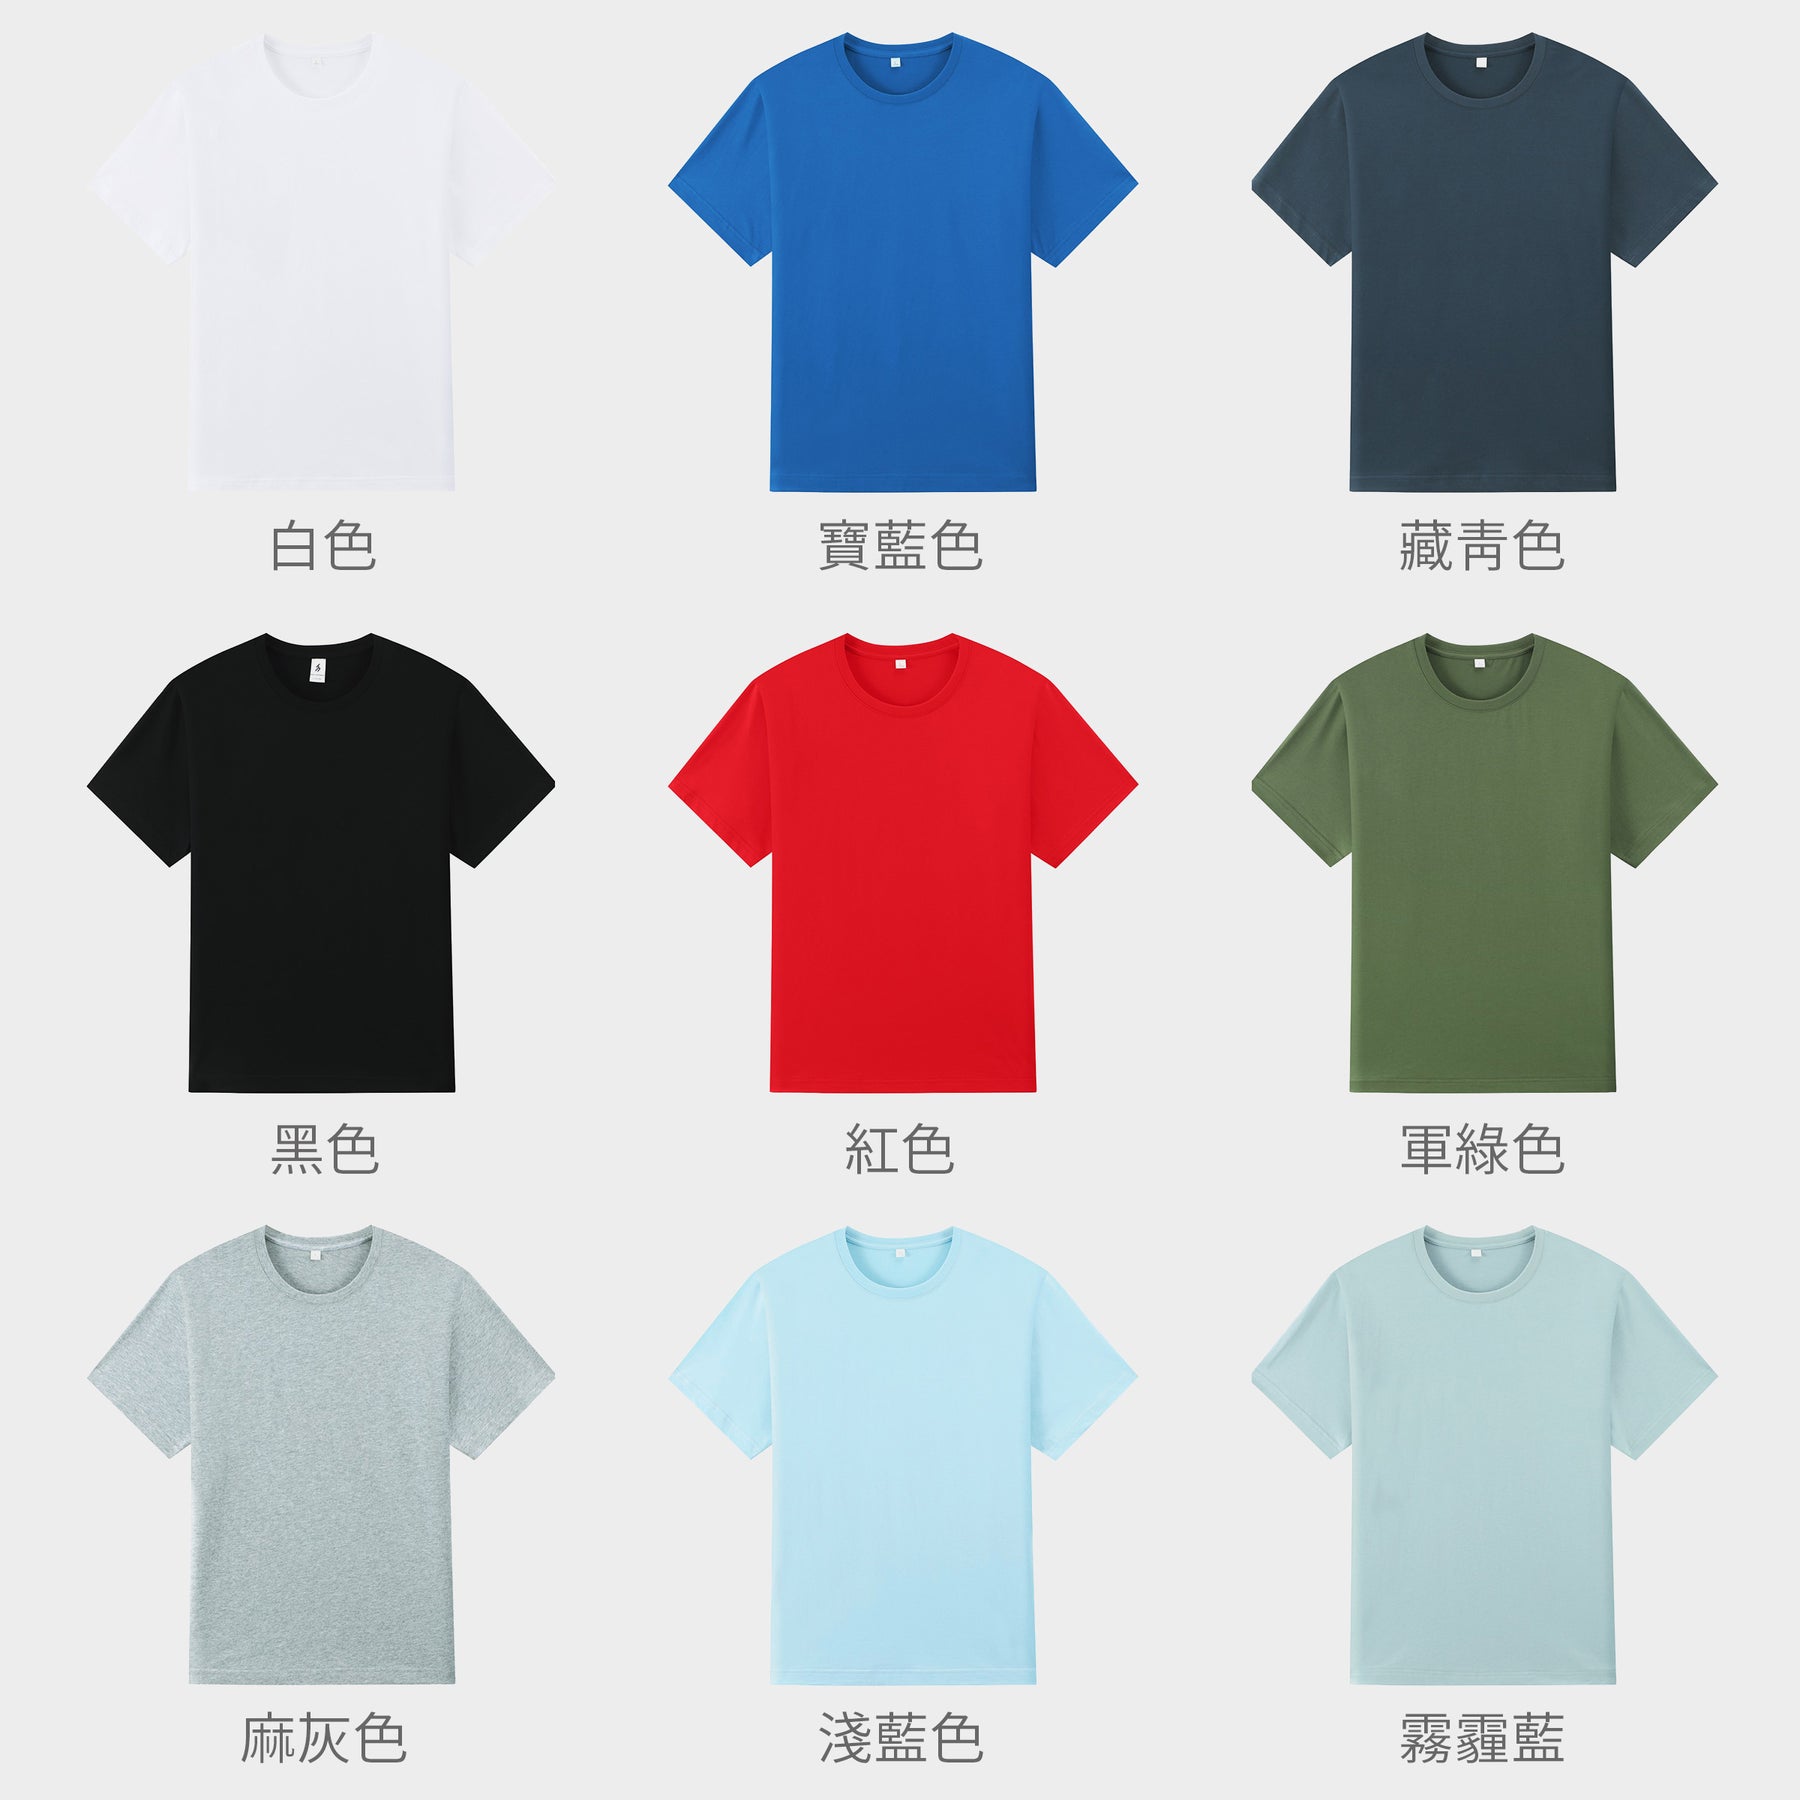 【女裝系列】訂製印花T恤 客製化女裝休閒寬鬆短袖T恤上衣